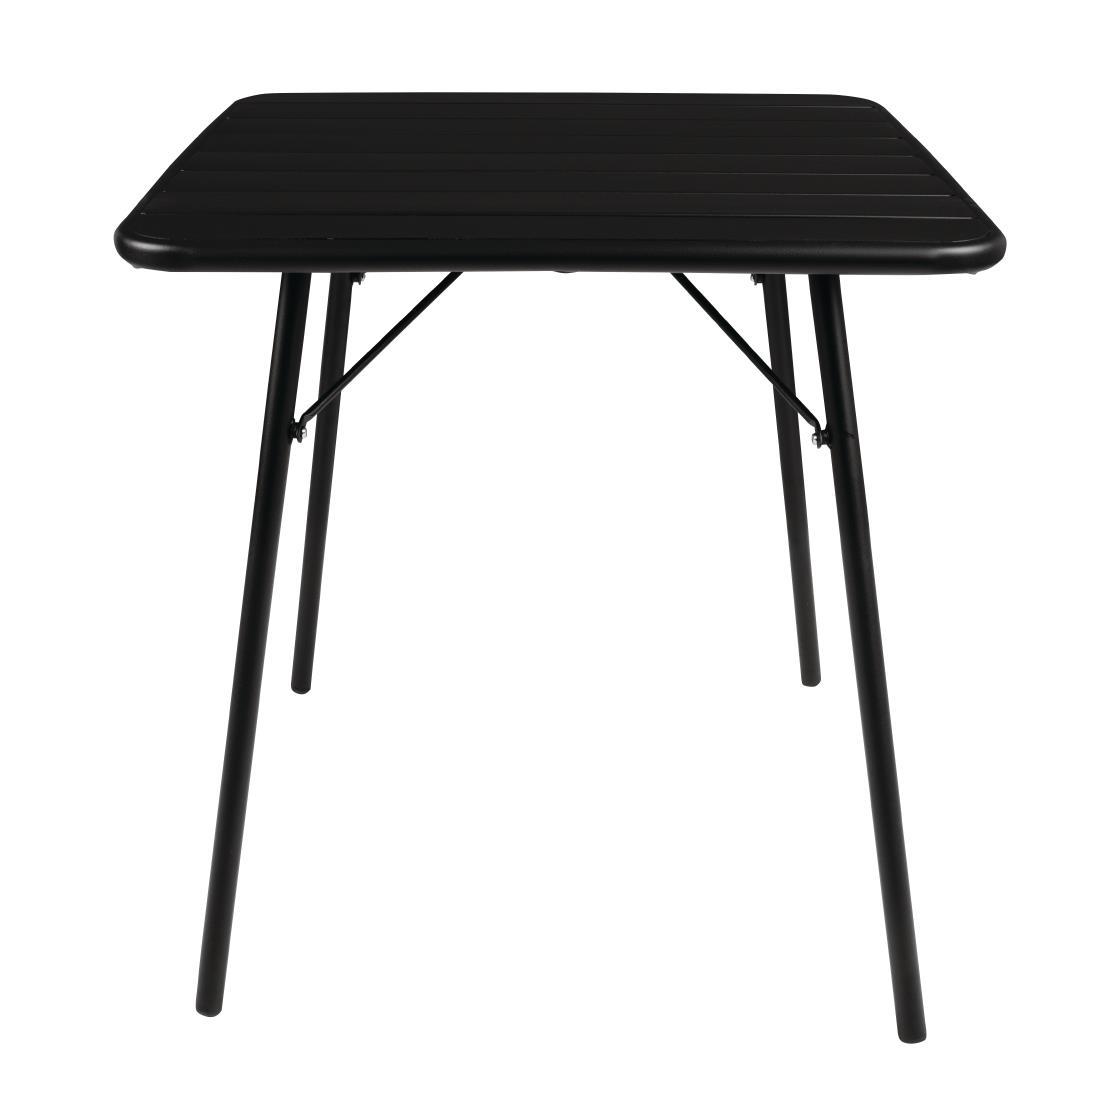 Bolero Square Slatted Steel Table Black 700mm - CS731  - 2